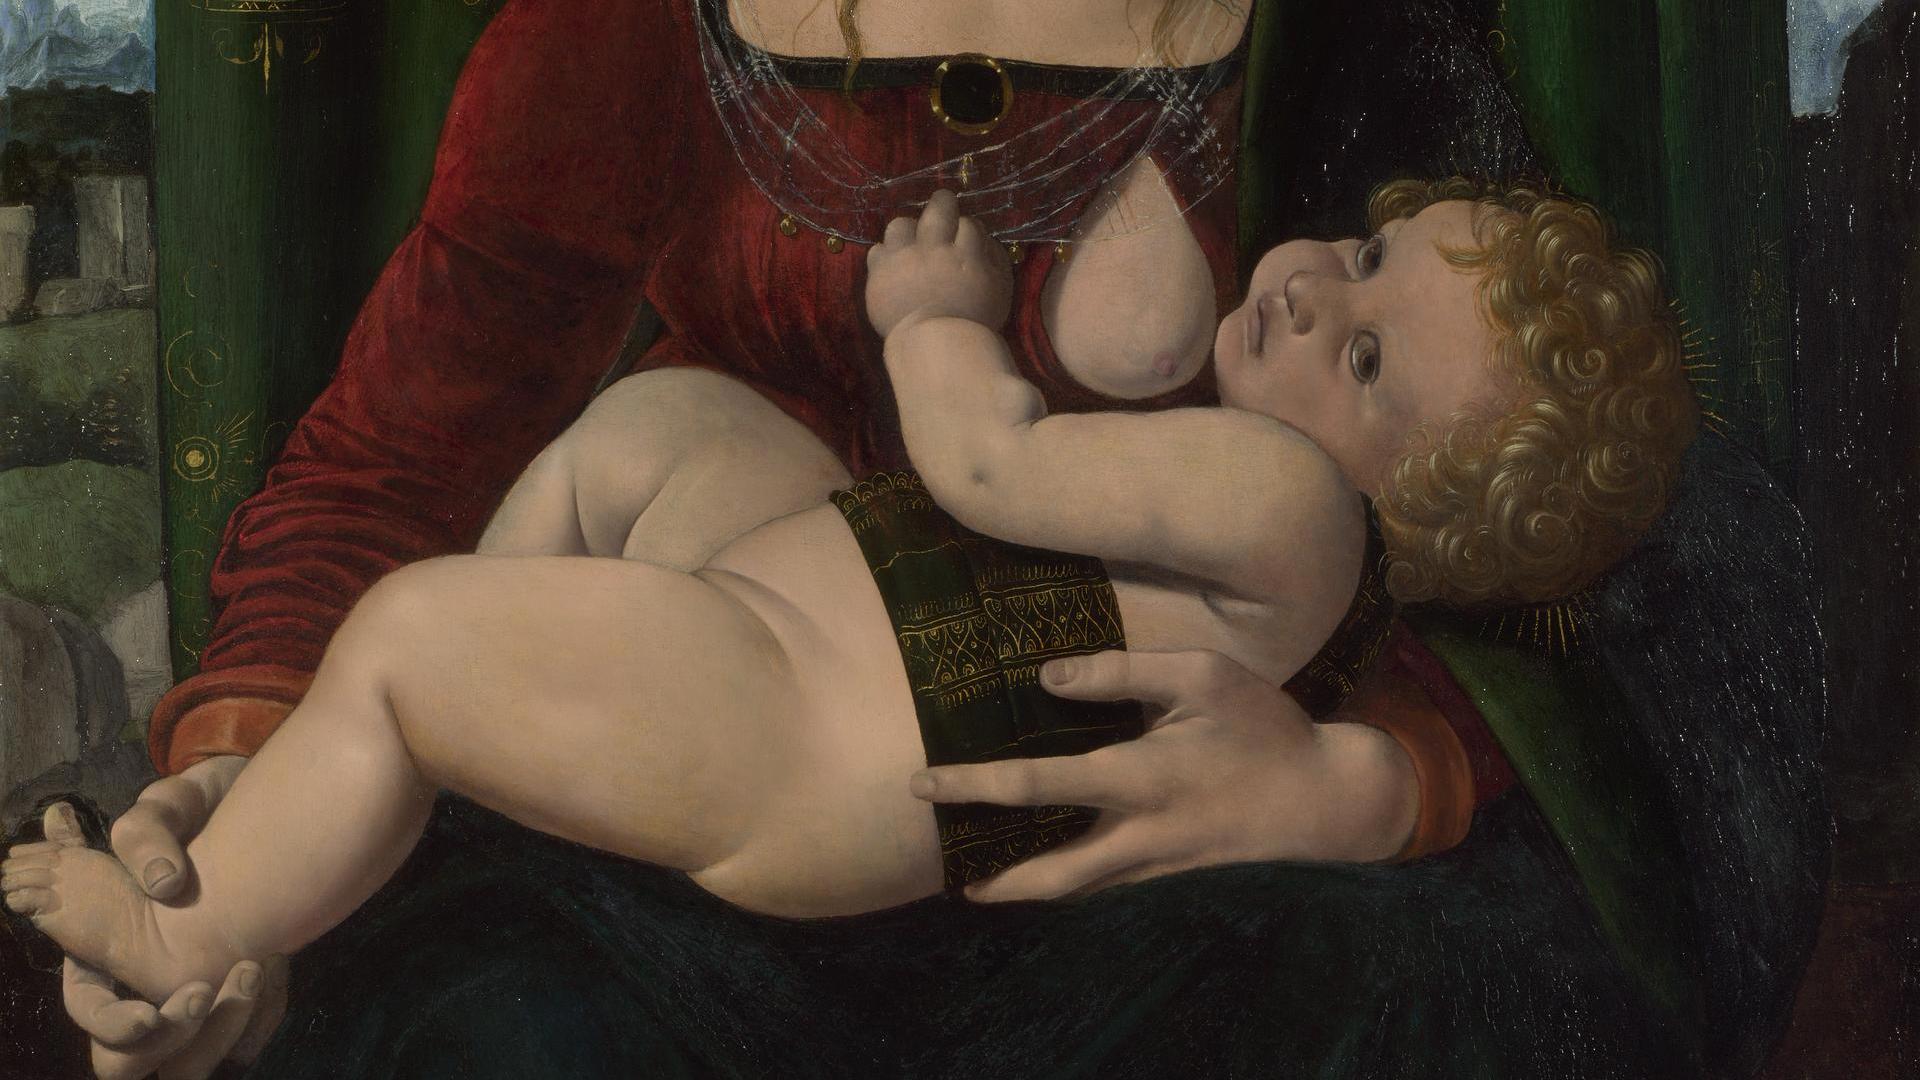 The Virgin and Child by Giovanni Antonio Boltraffio